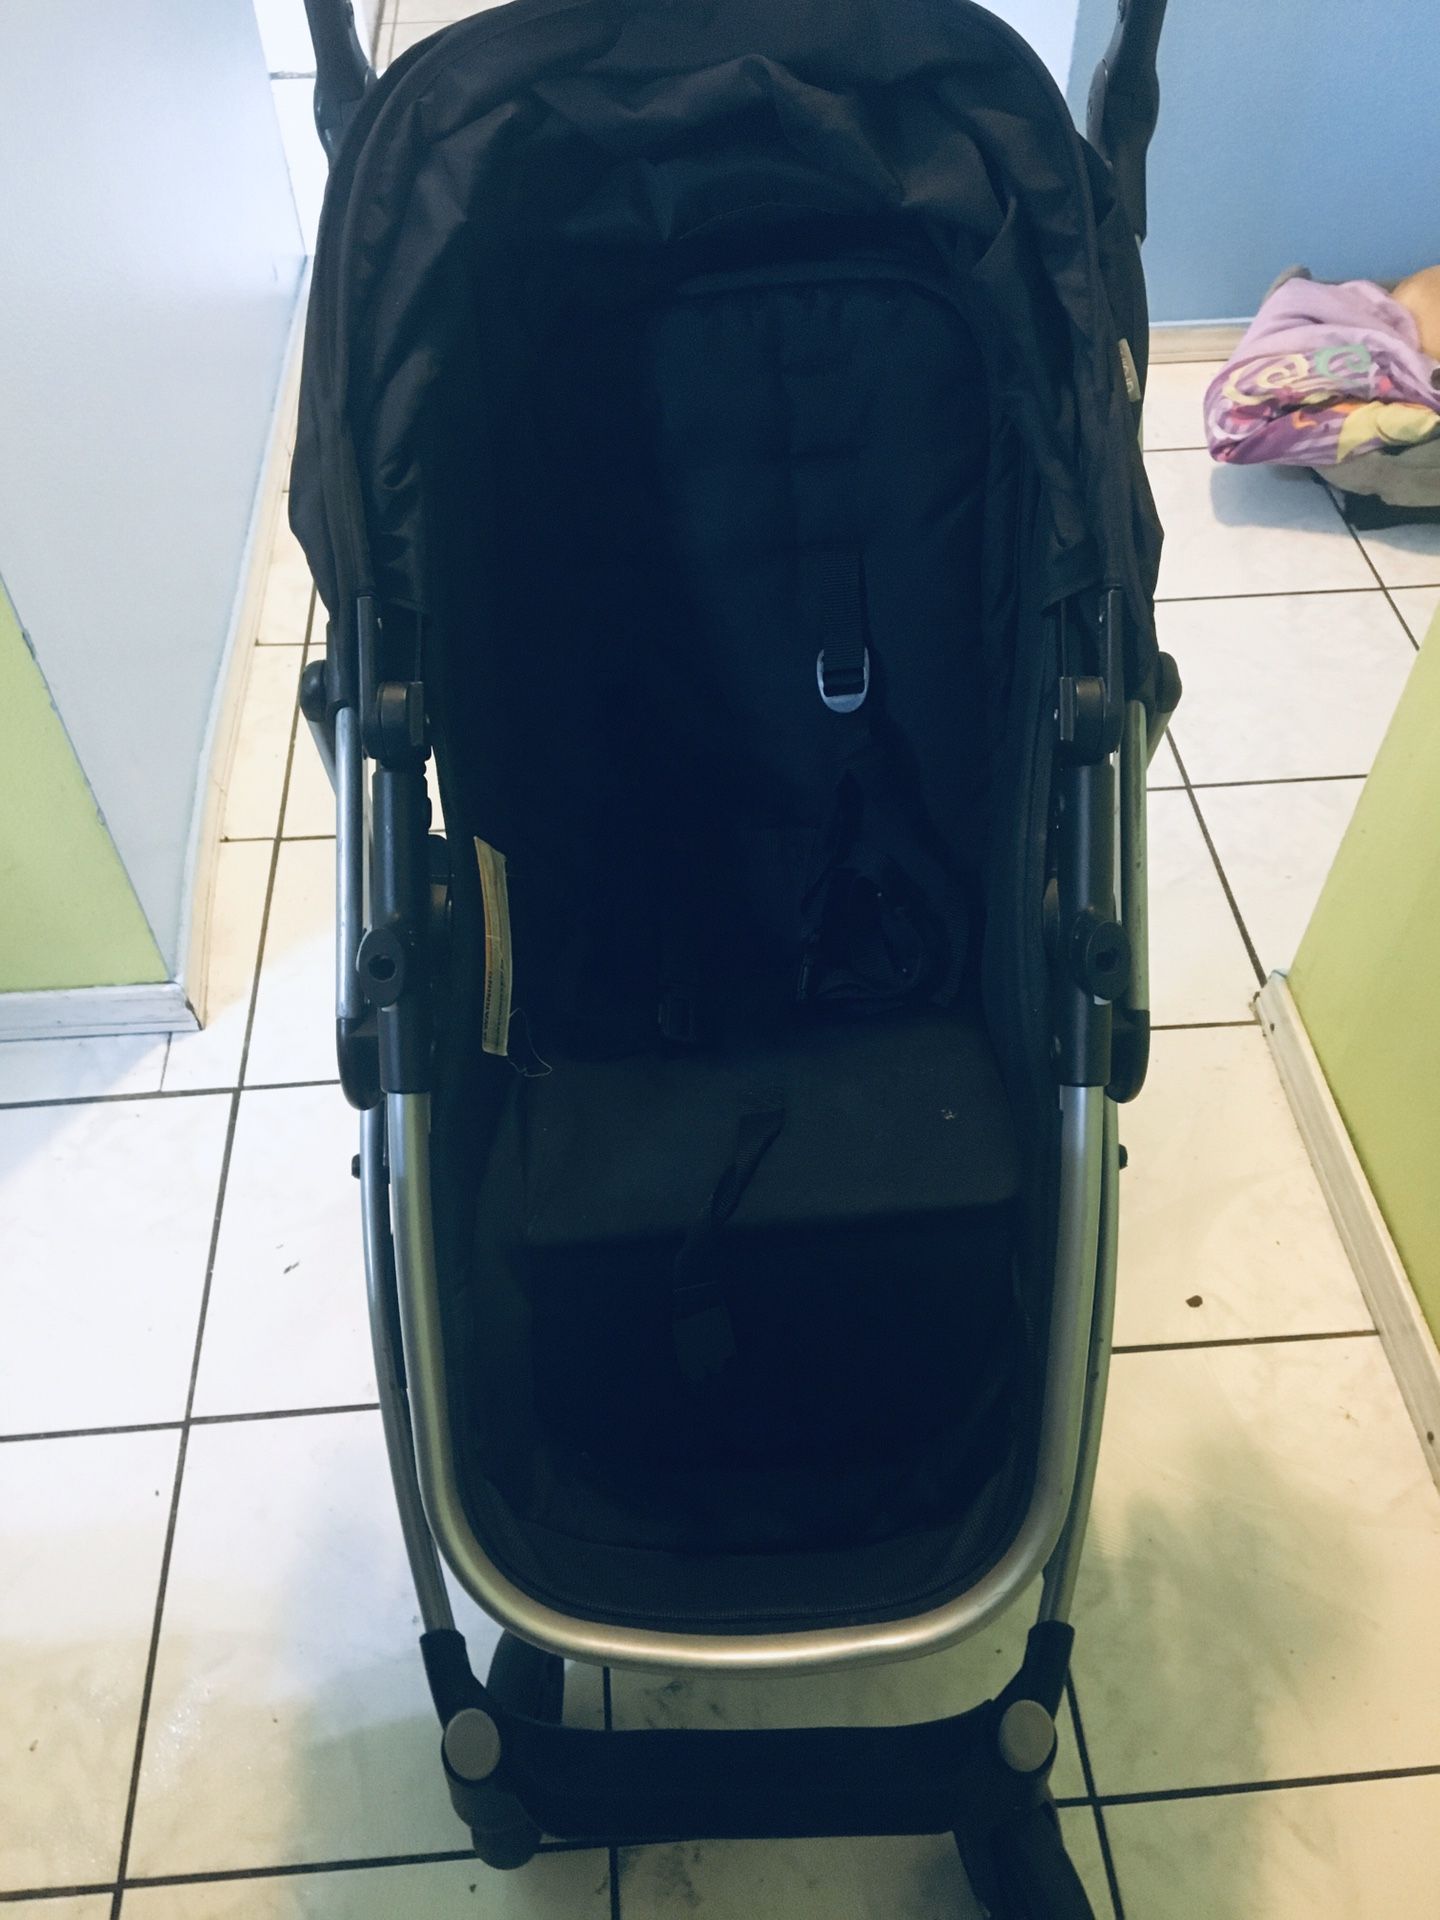 Urbini black stroller $30